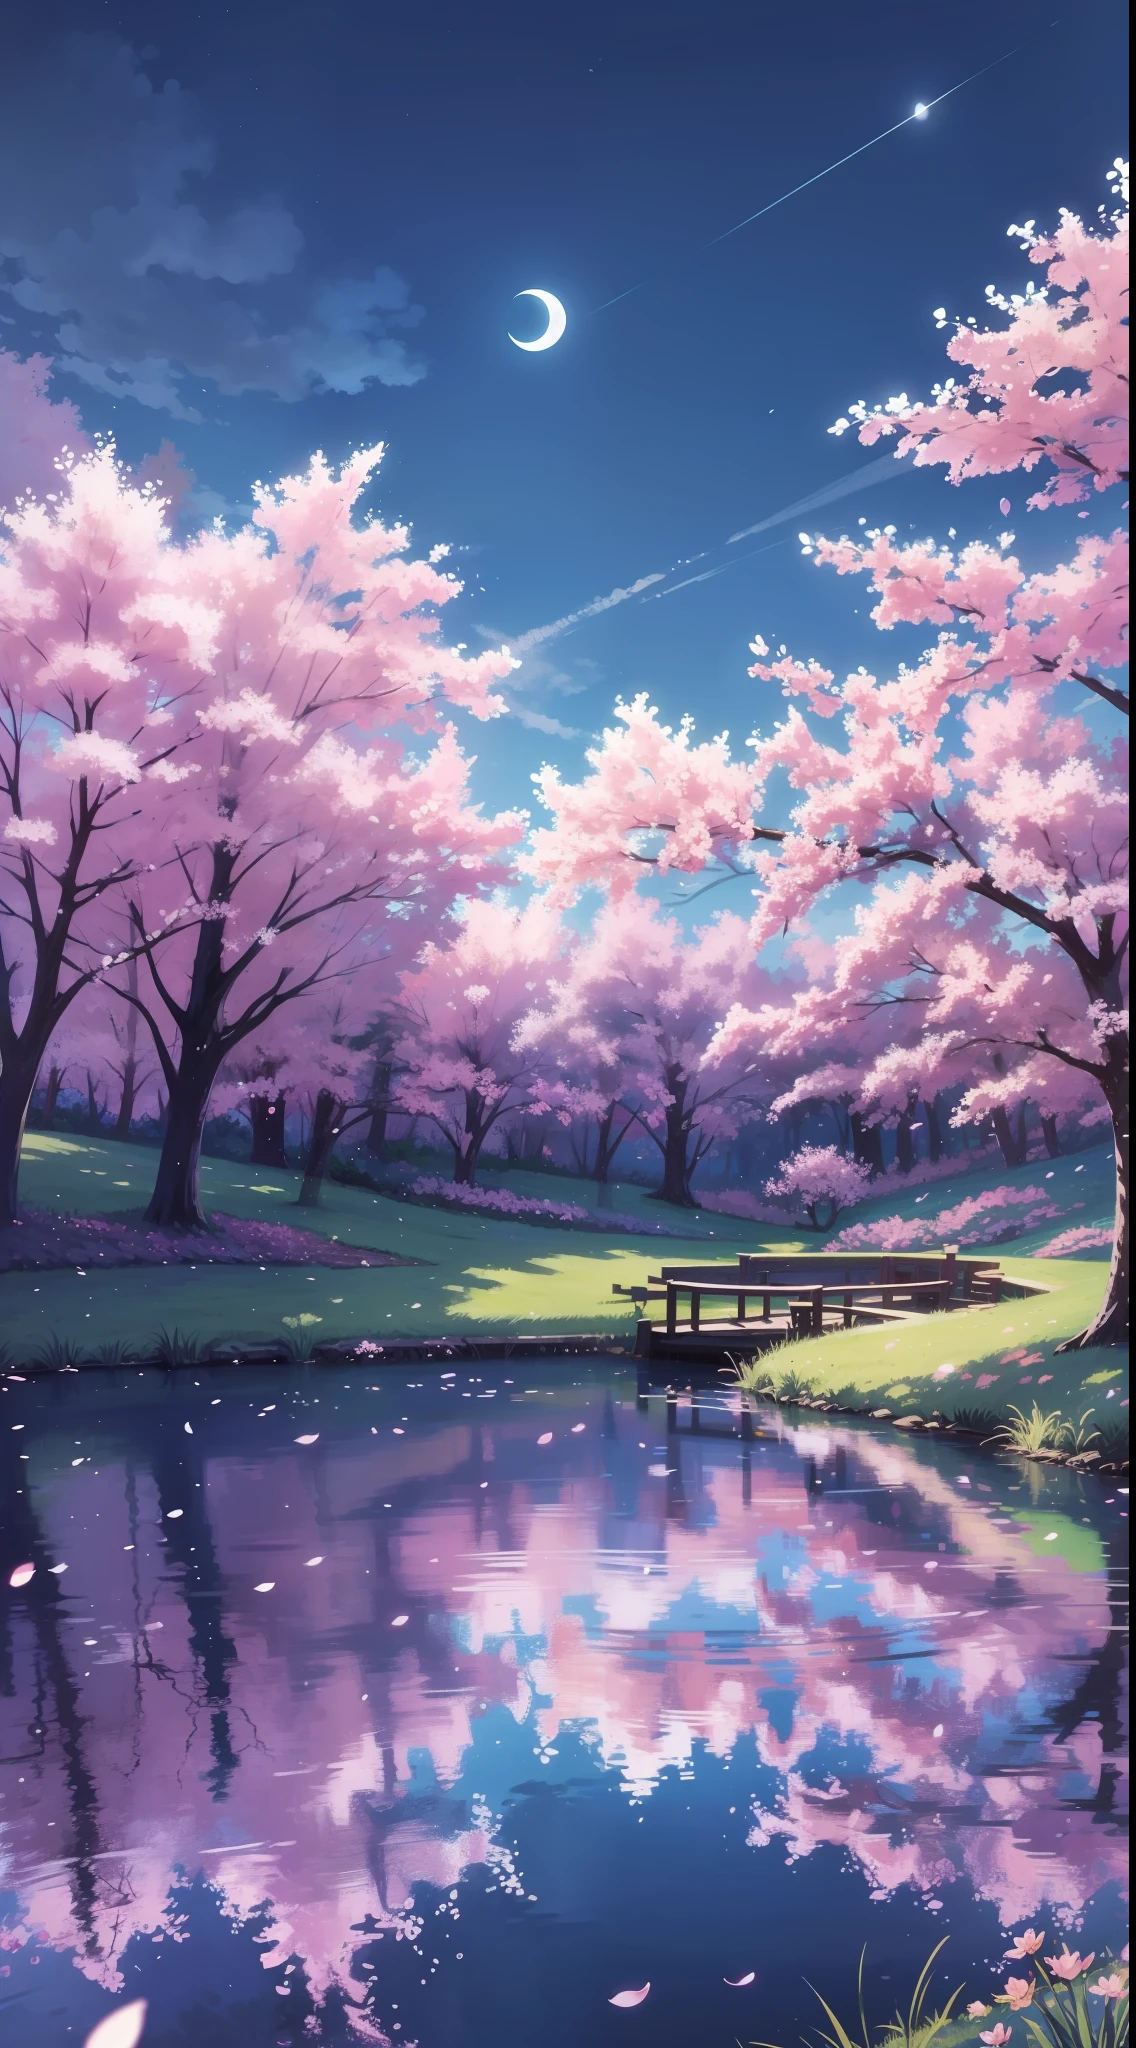 arrière-plan, forêt, étang au milieu, fleurs de cerisier, nuit, lune, Ciel bleu, Herbe bleue, réflexion, détail élevé, nénuphars, haute qualité